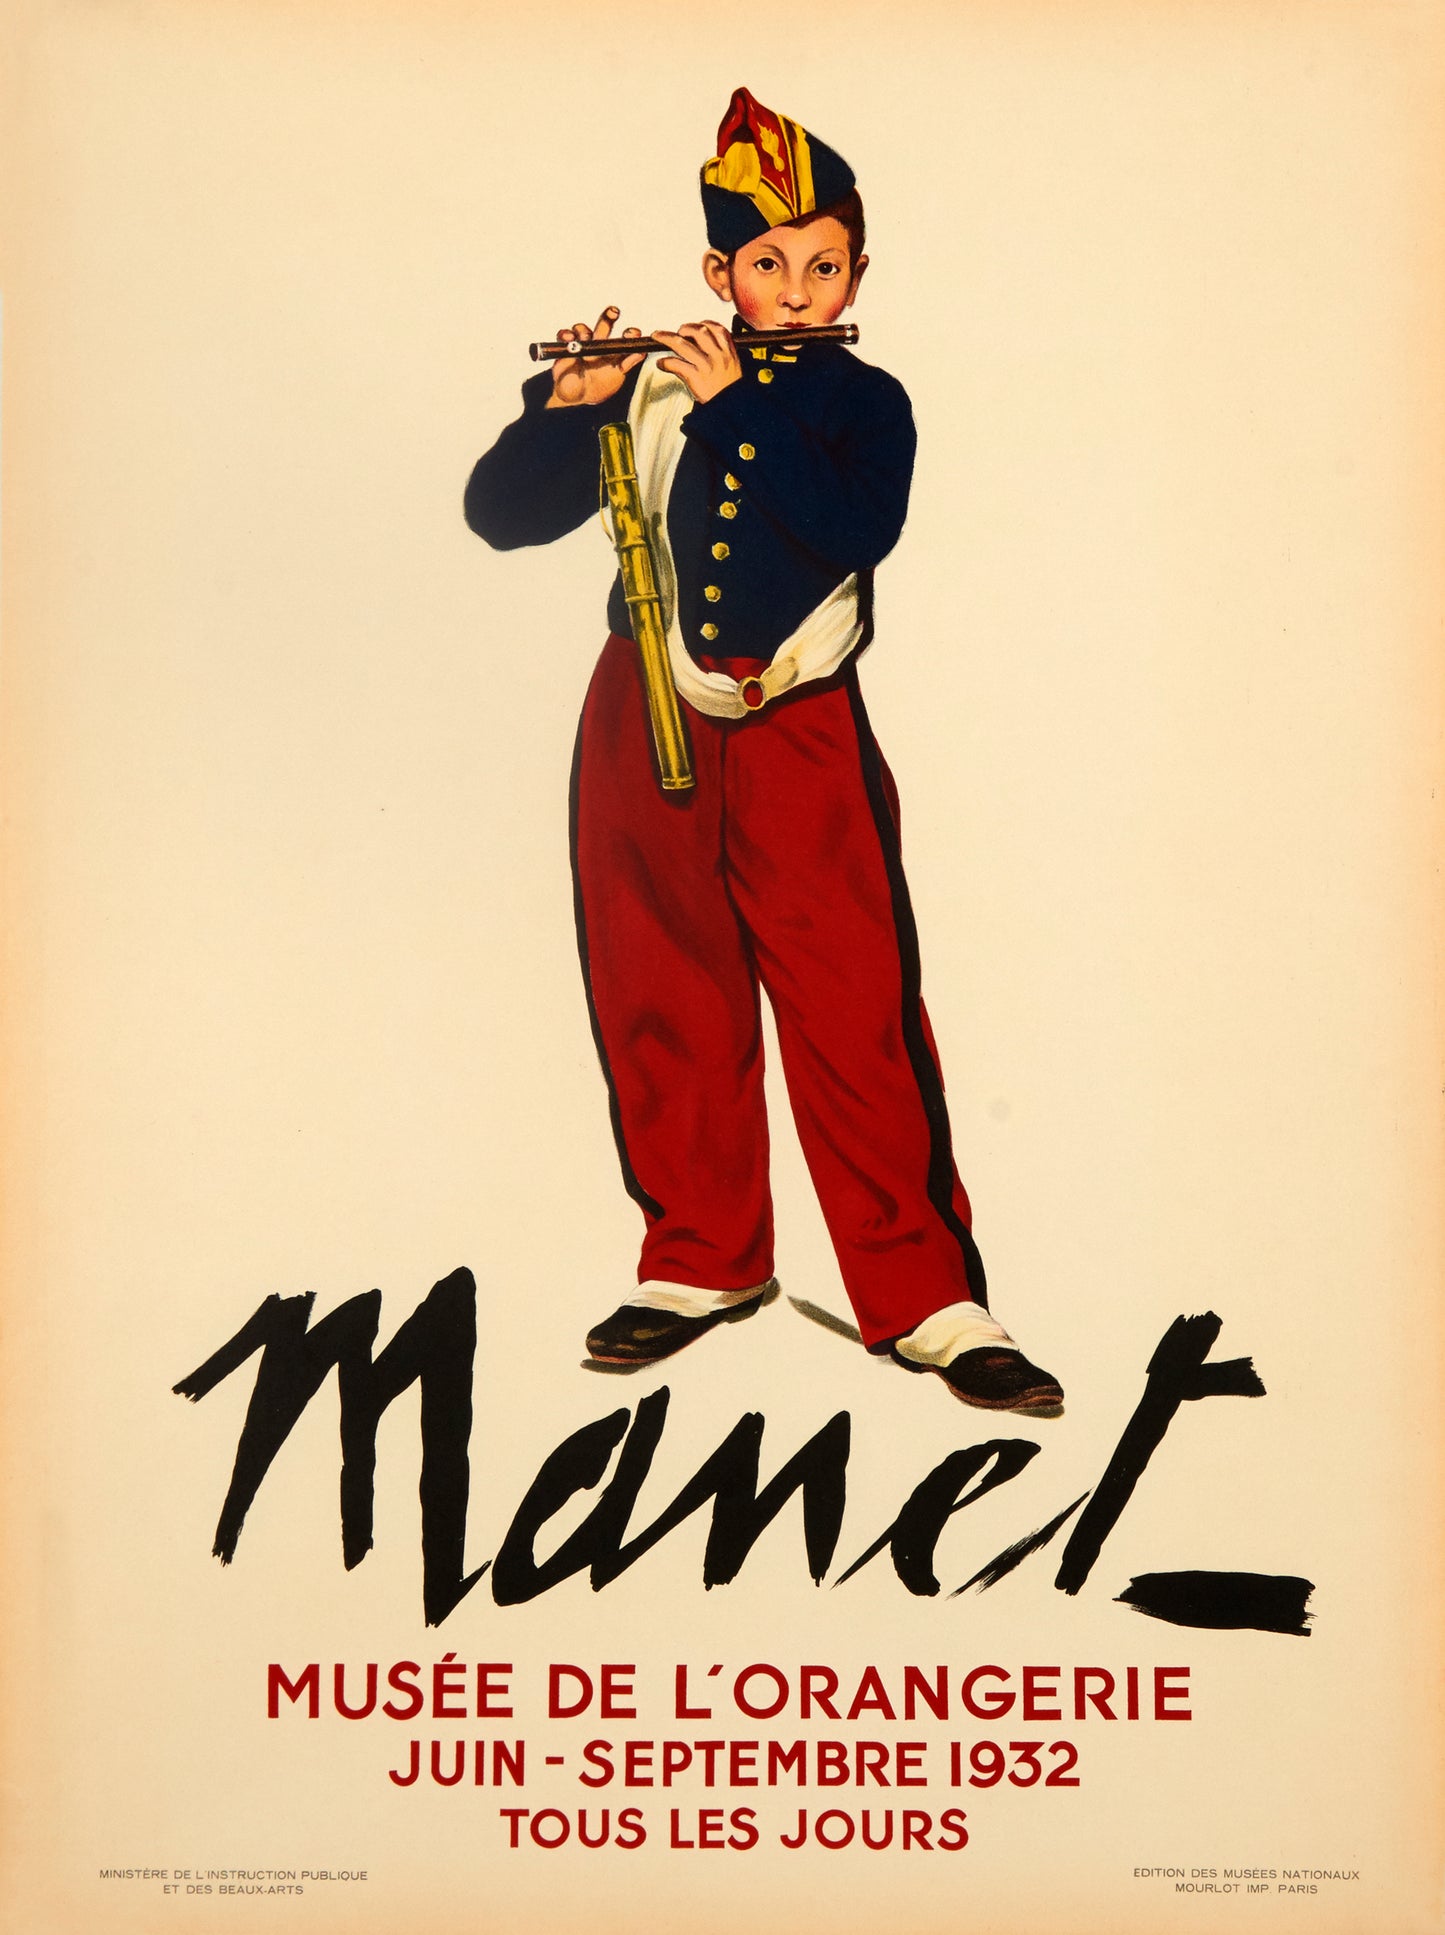 Le Fifre - Musée De L'Orangerie (after) Edouard Manet, 1932 - Mourlot Editions - Fine_Art - Poster - Lithograph - Wall Art - Vintage - Prints - Original